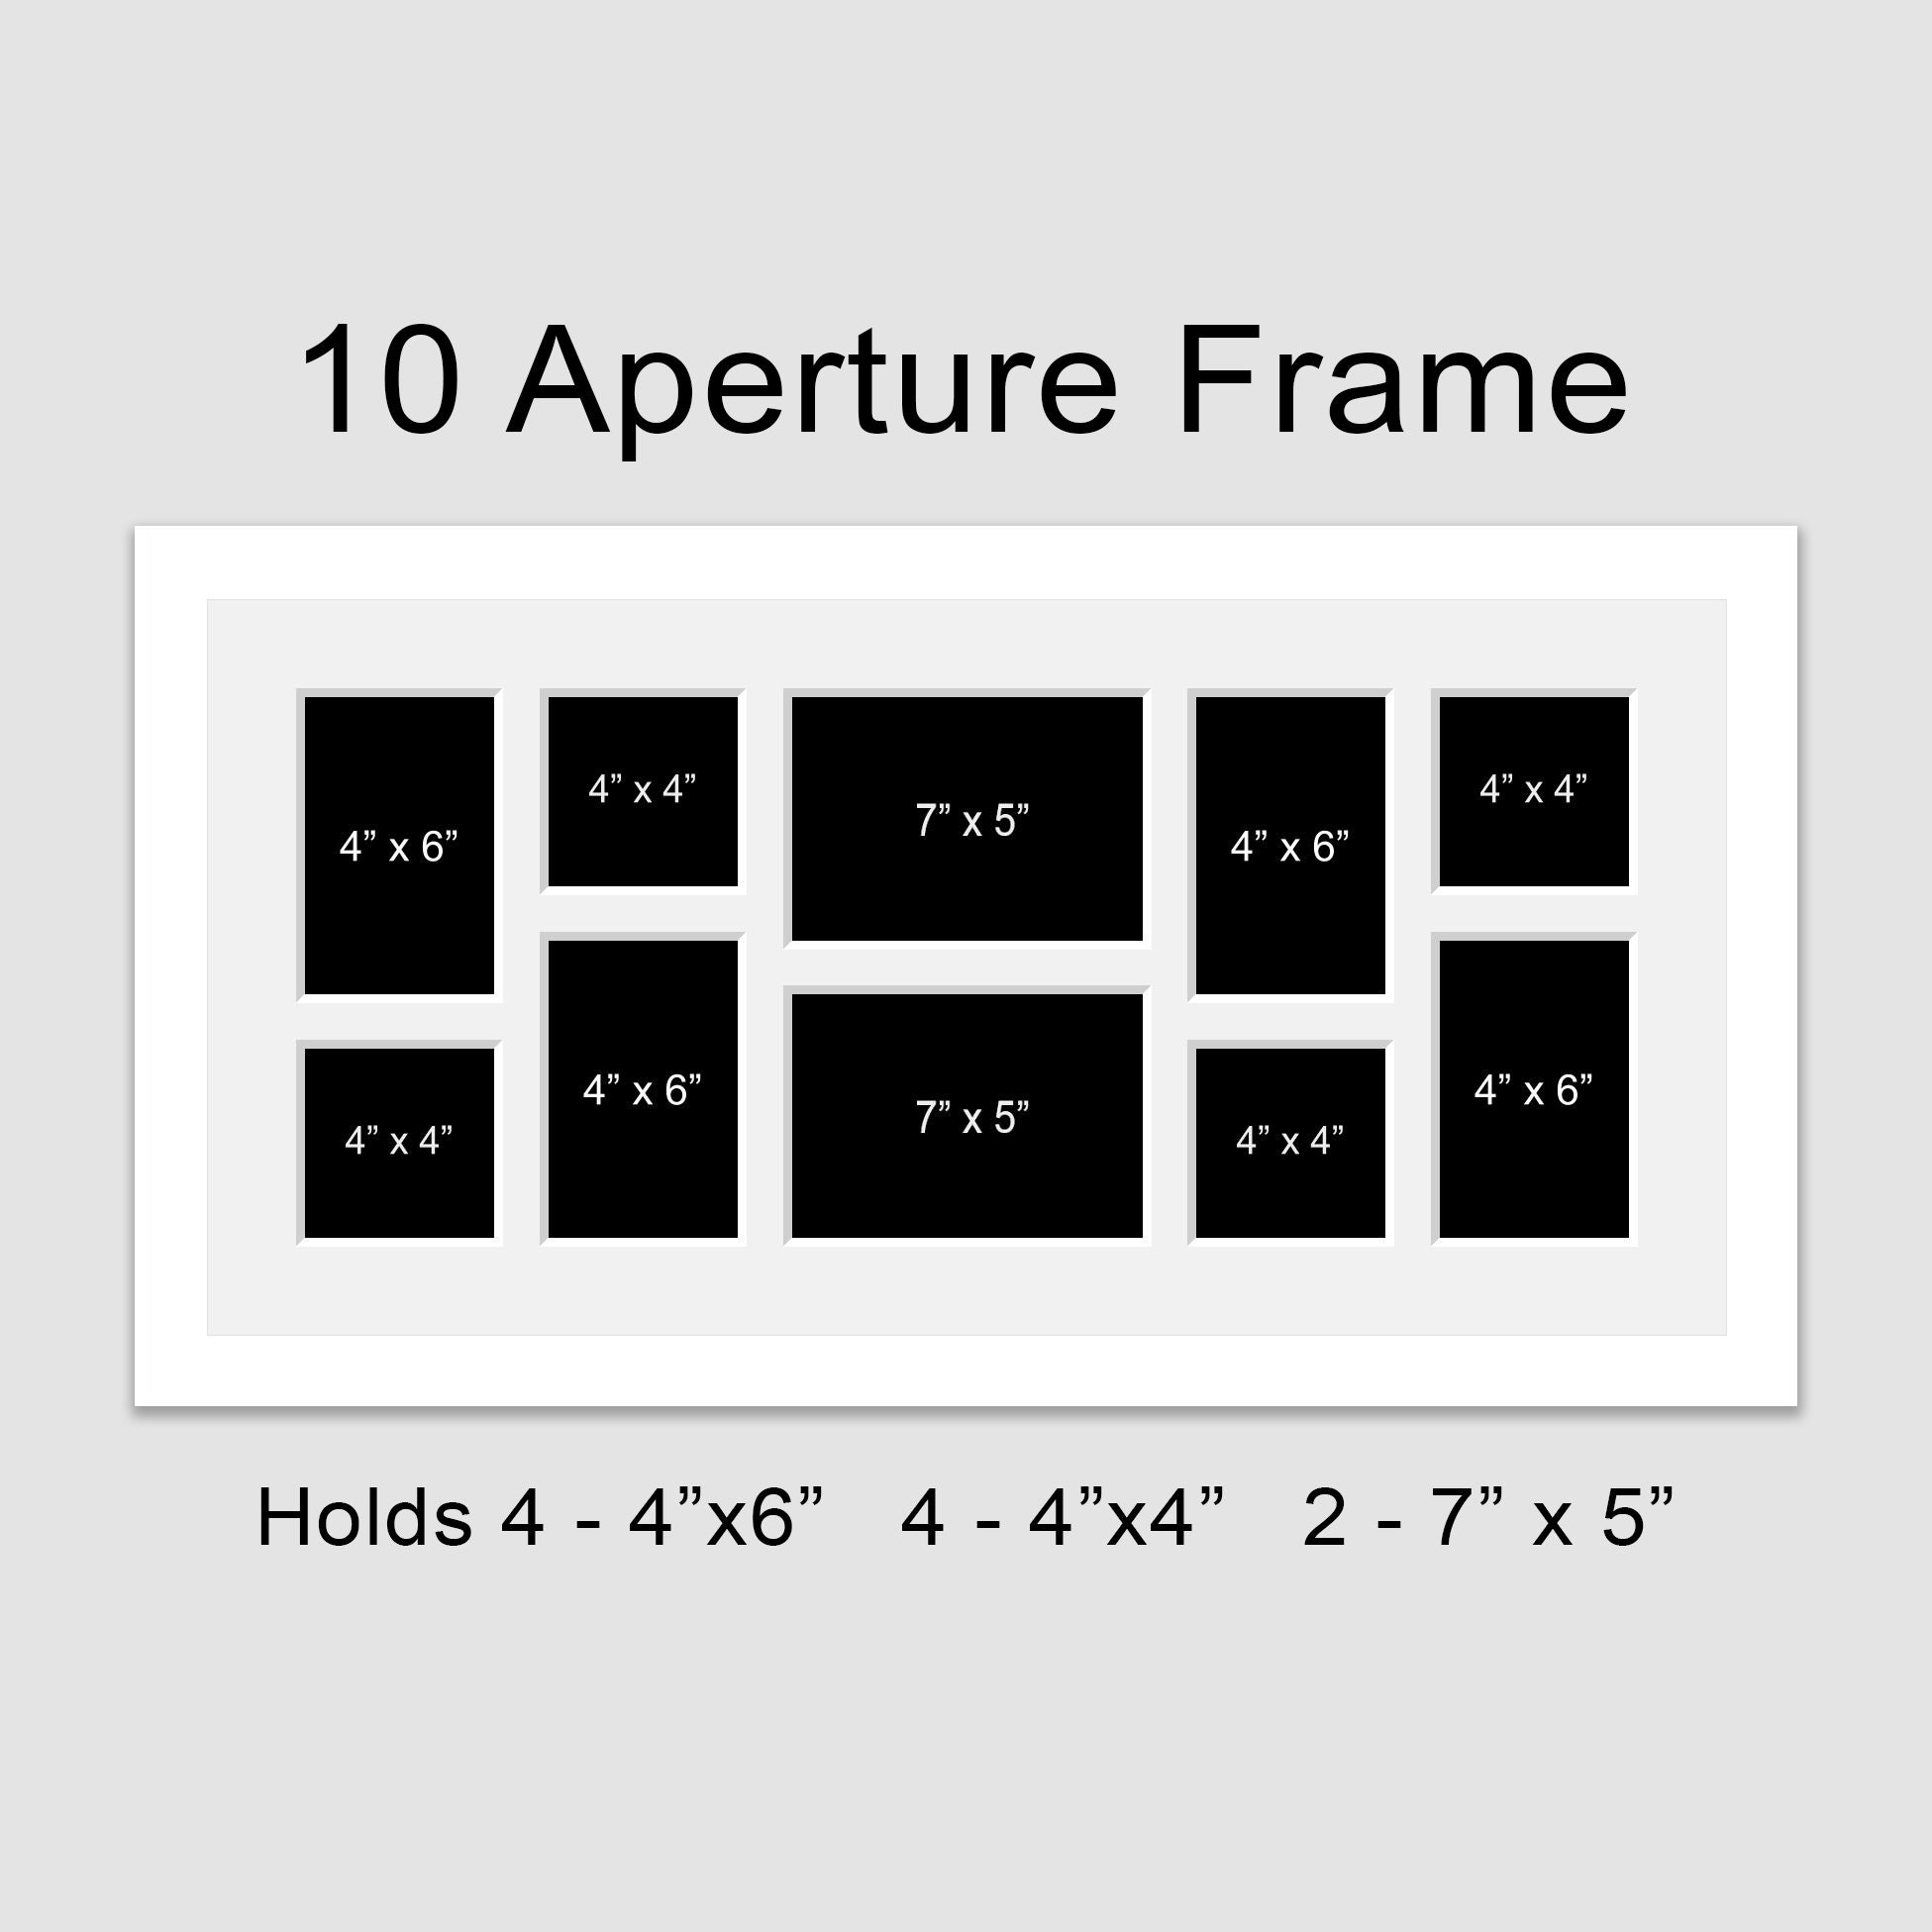 Galeria de 10 marcos madera en diferentes medidas con o sin imágenes